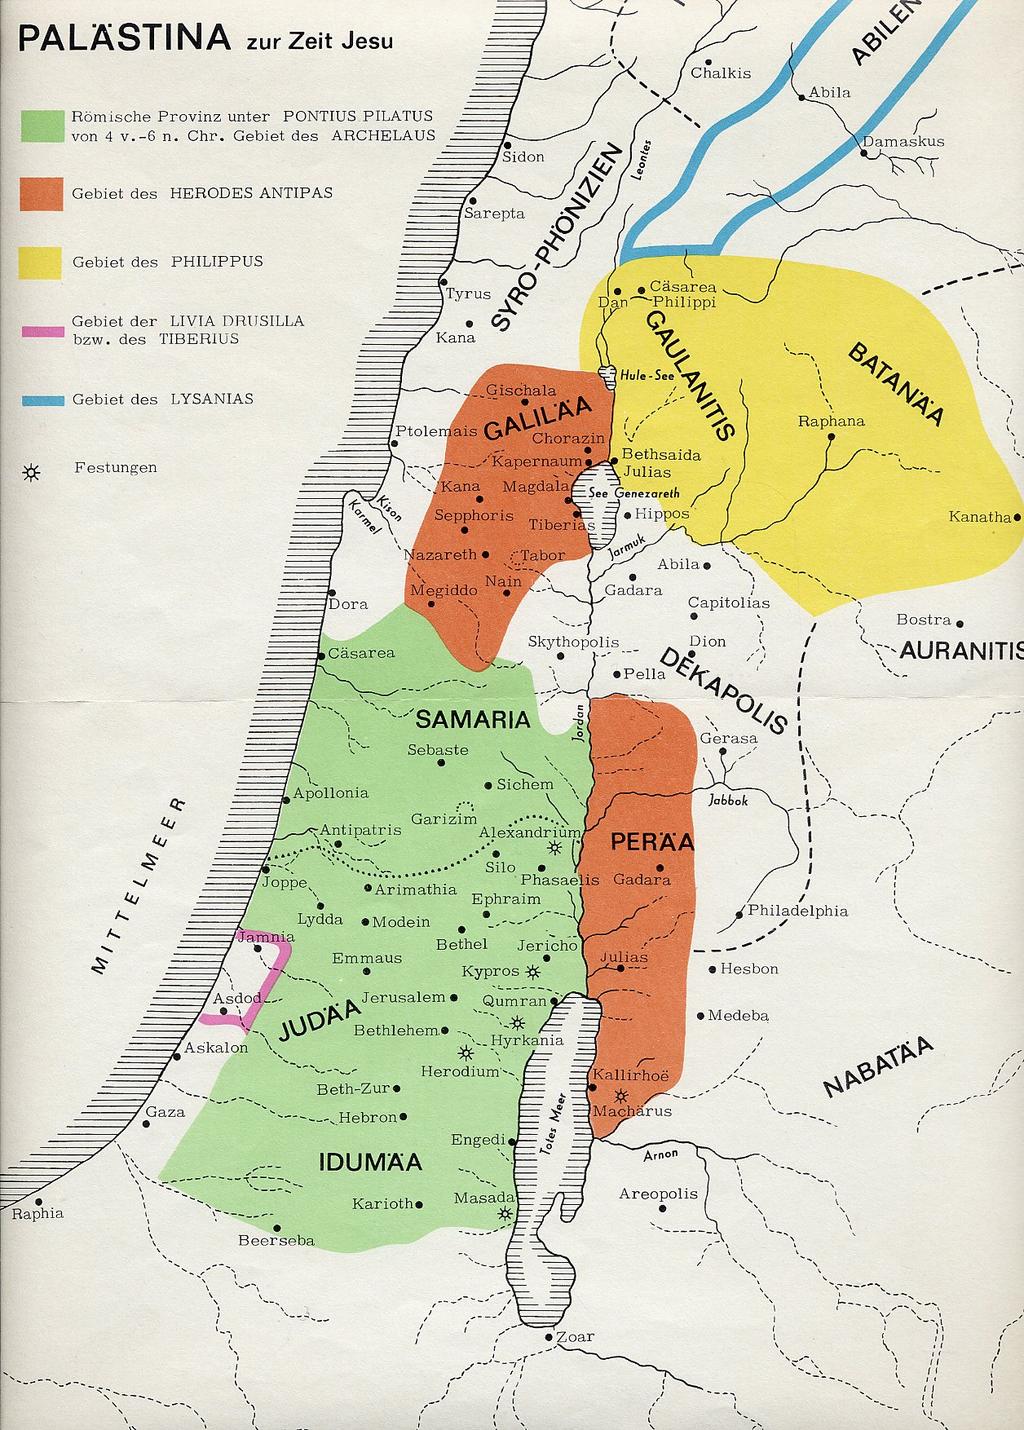 52 Kapitel II: Die Welt Jesu Abbildung 3: Karte von Palästina: Die Farben markieren sehr anschaulich die verschiedenen Territorien zur Zeit Jesu: Der grüne Bereich ist römischen Statthaltern